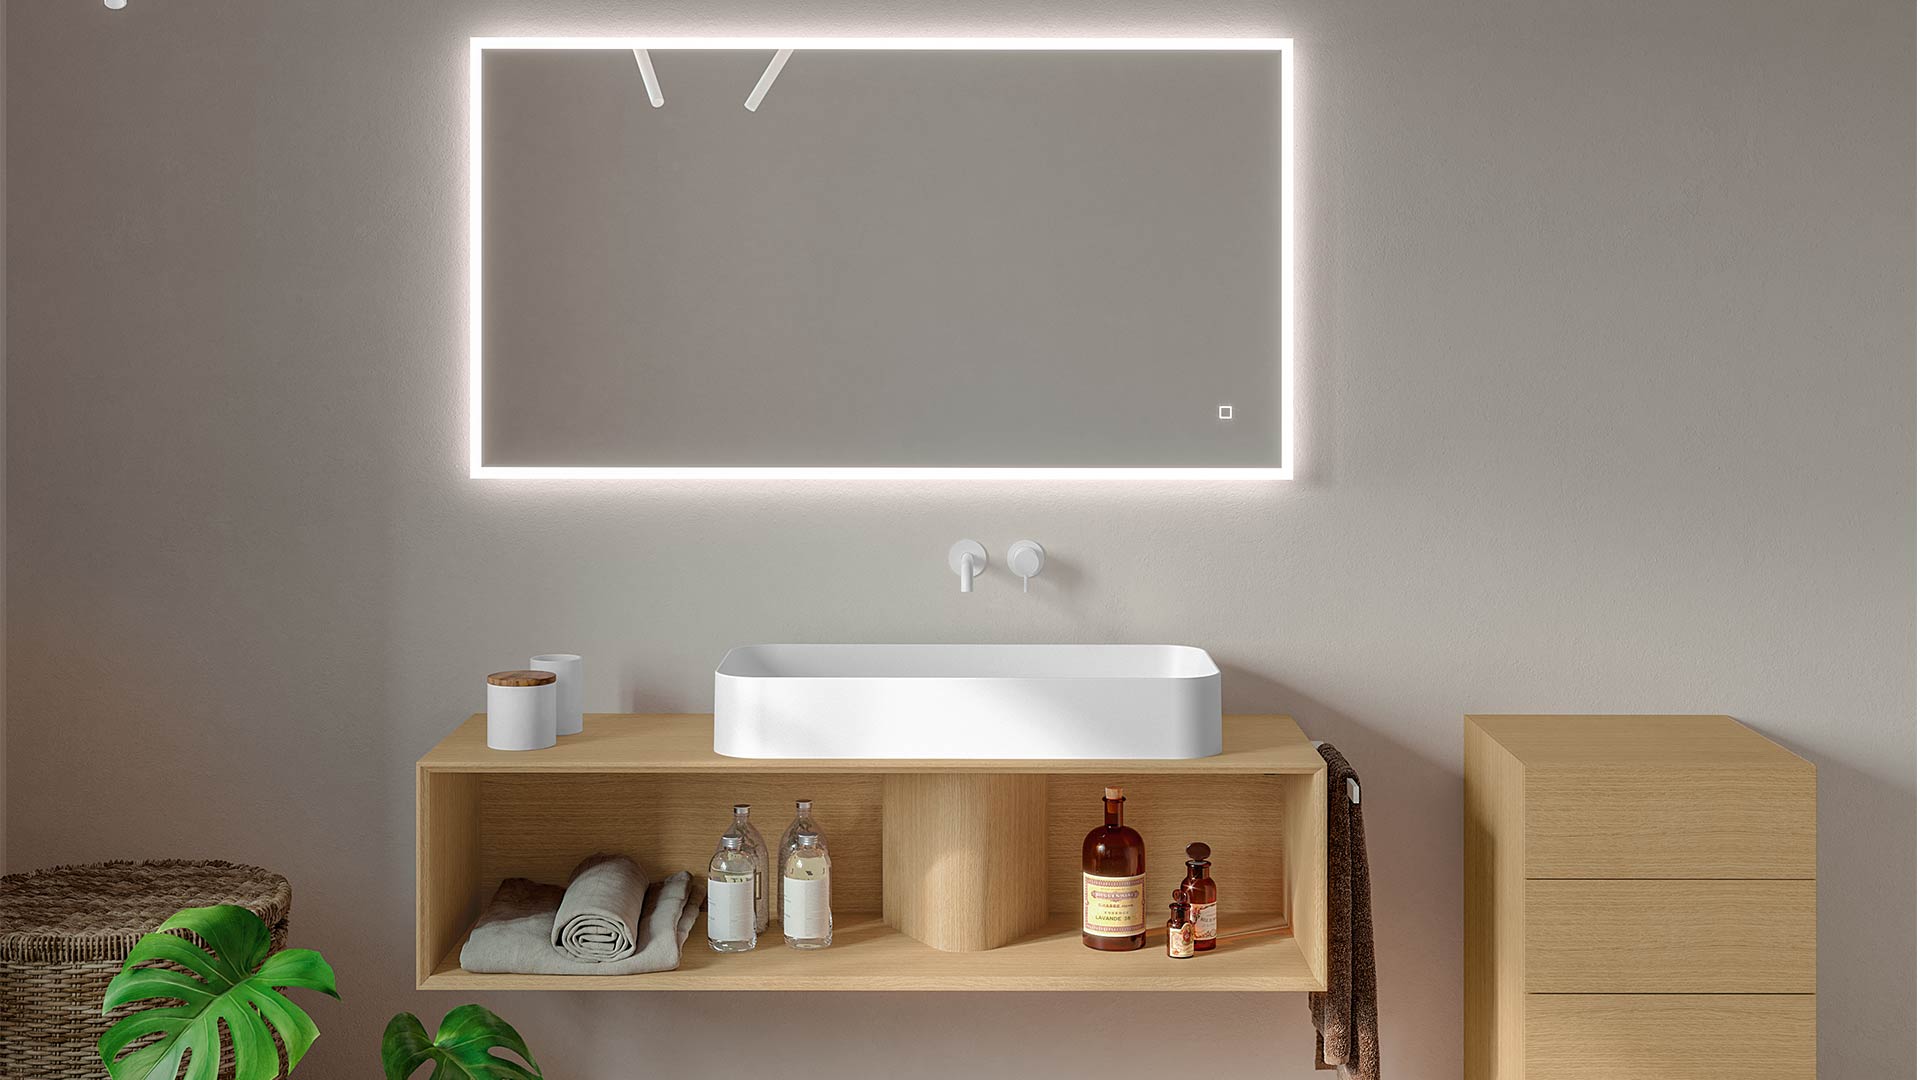 I migliori specchi da bagno: come e perché sceglierli